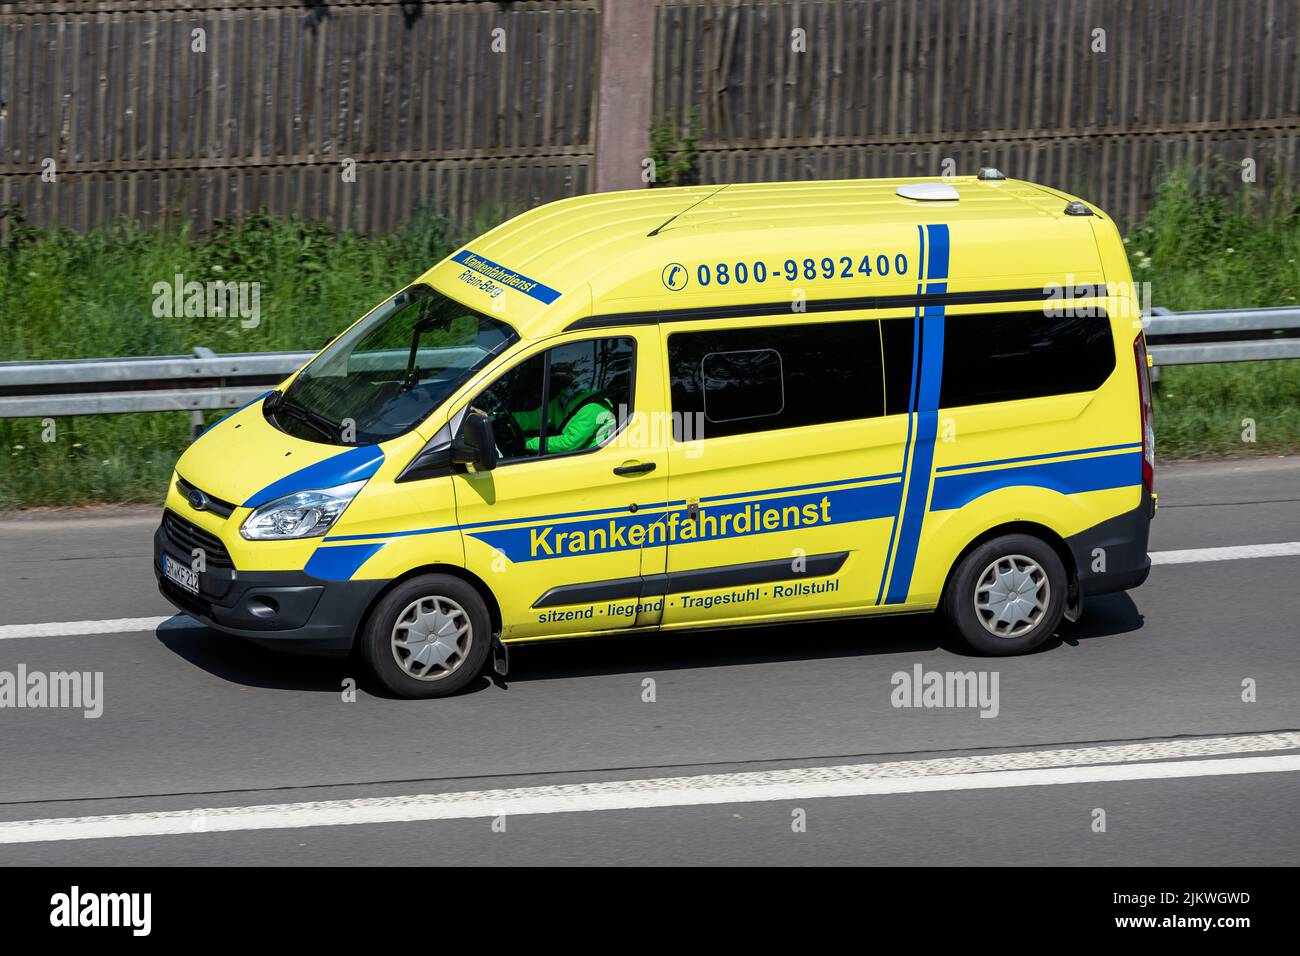 Krankenfahrdienst Rhein-Berg Ford Transit sur l'autoroute Banque D'Images